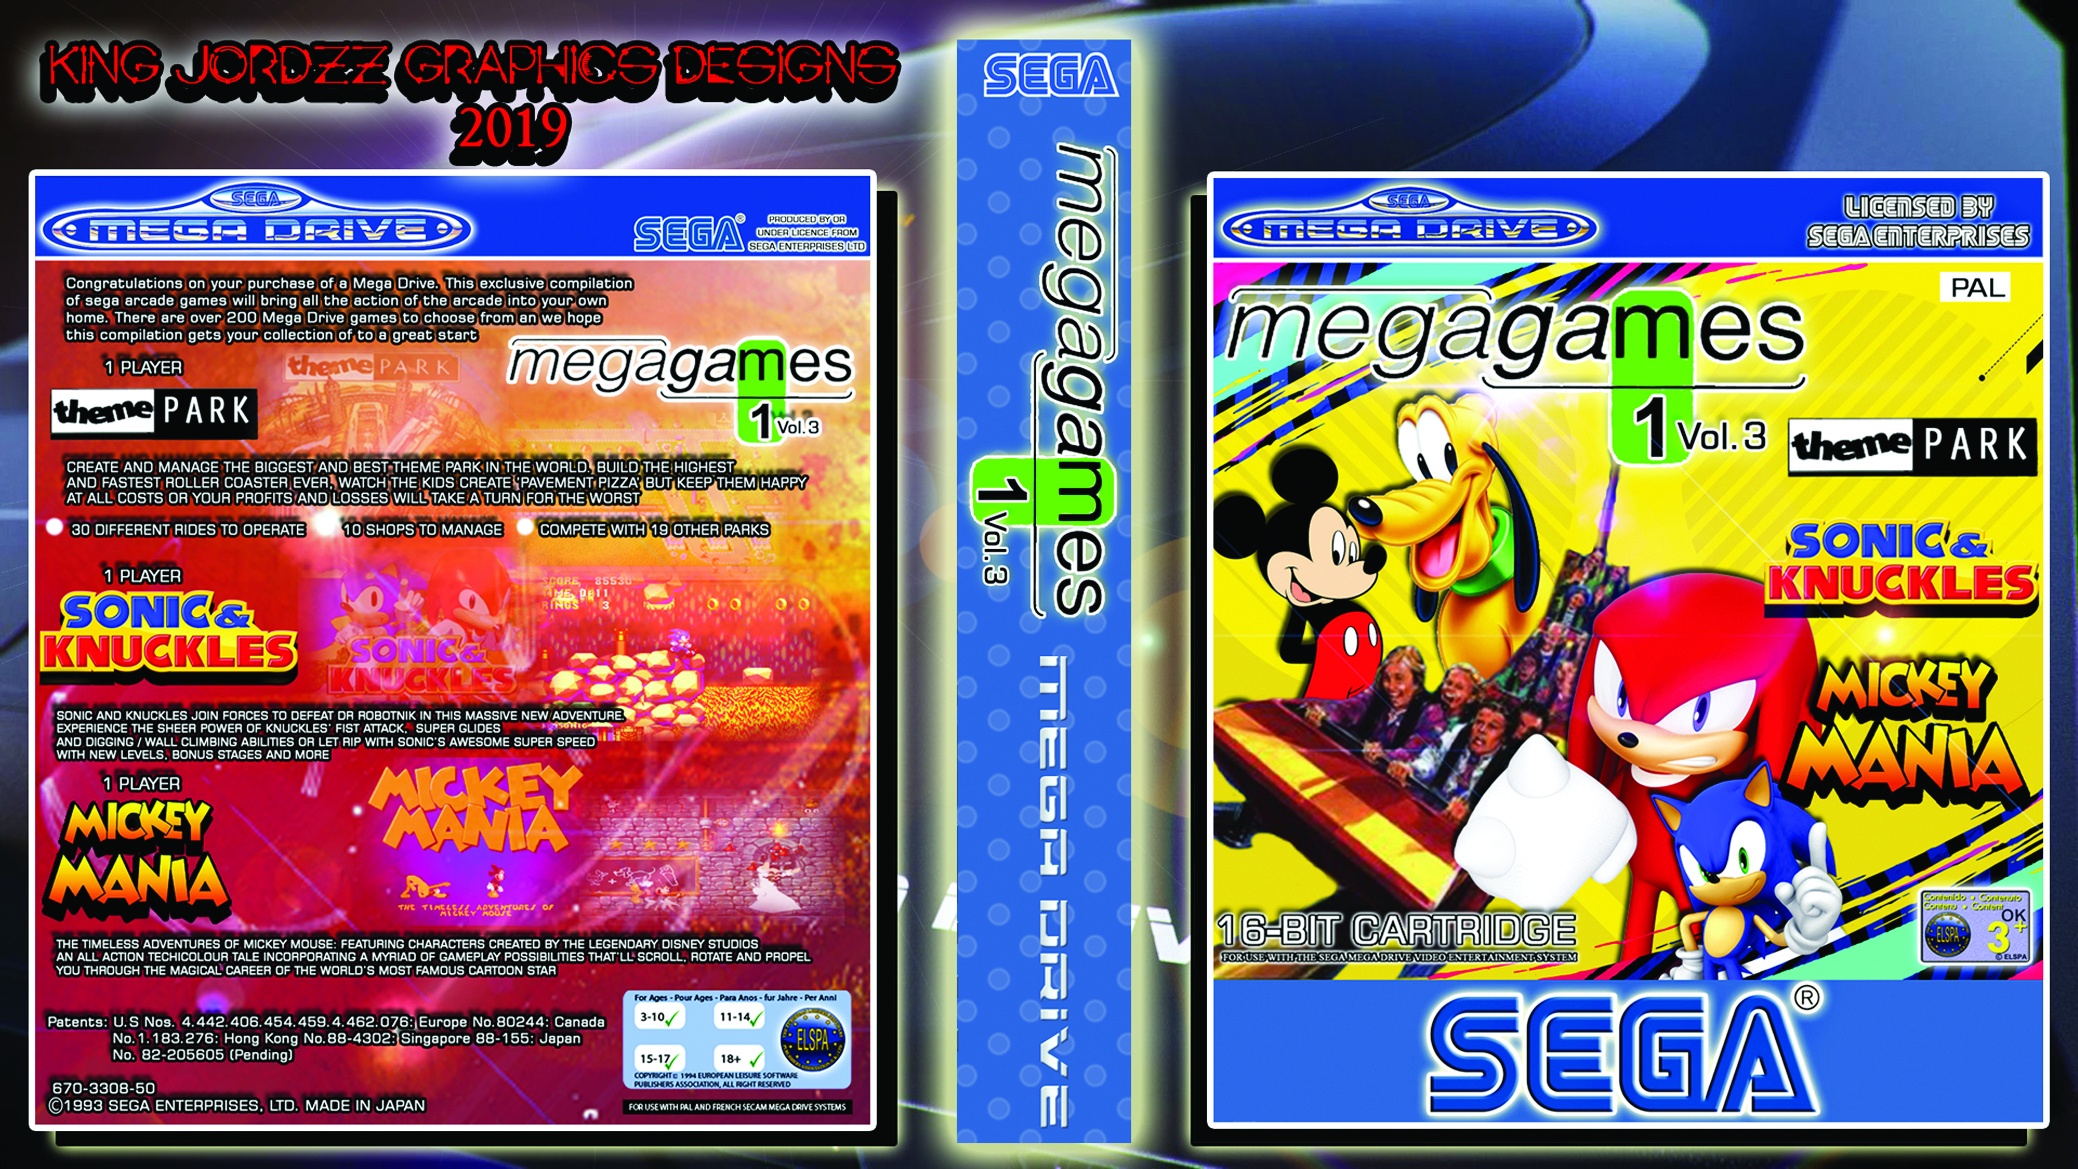 Sega: Mega Games 1 Vol.3 box cover